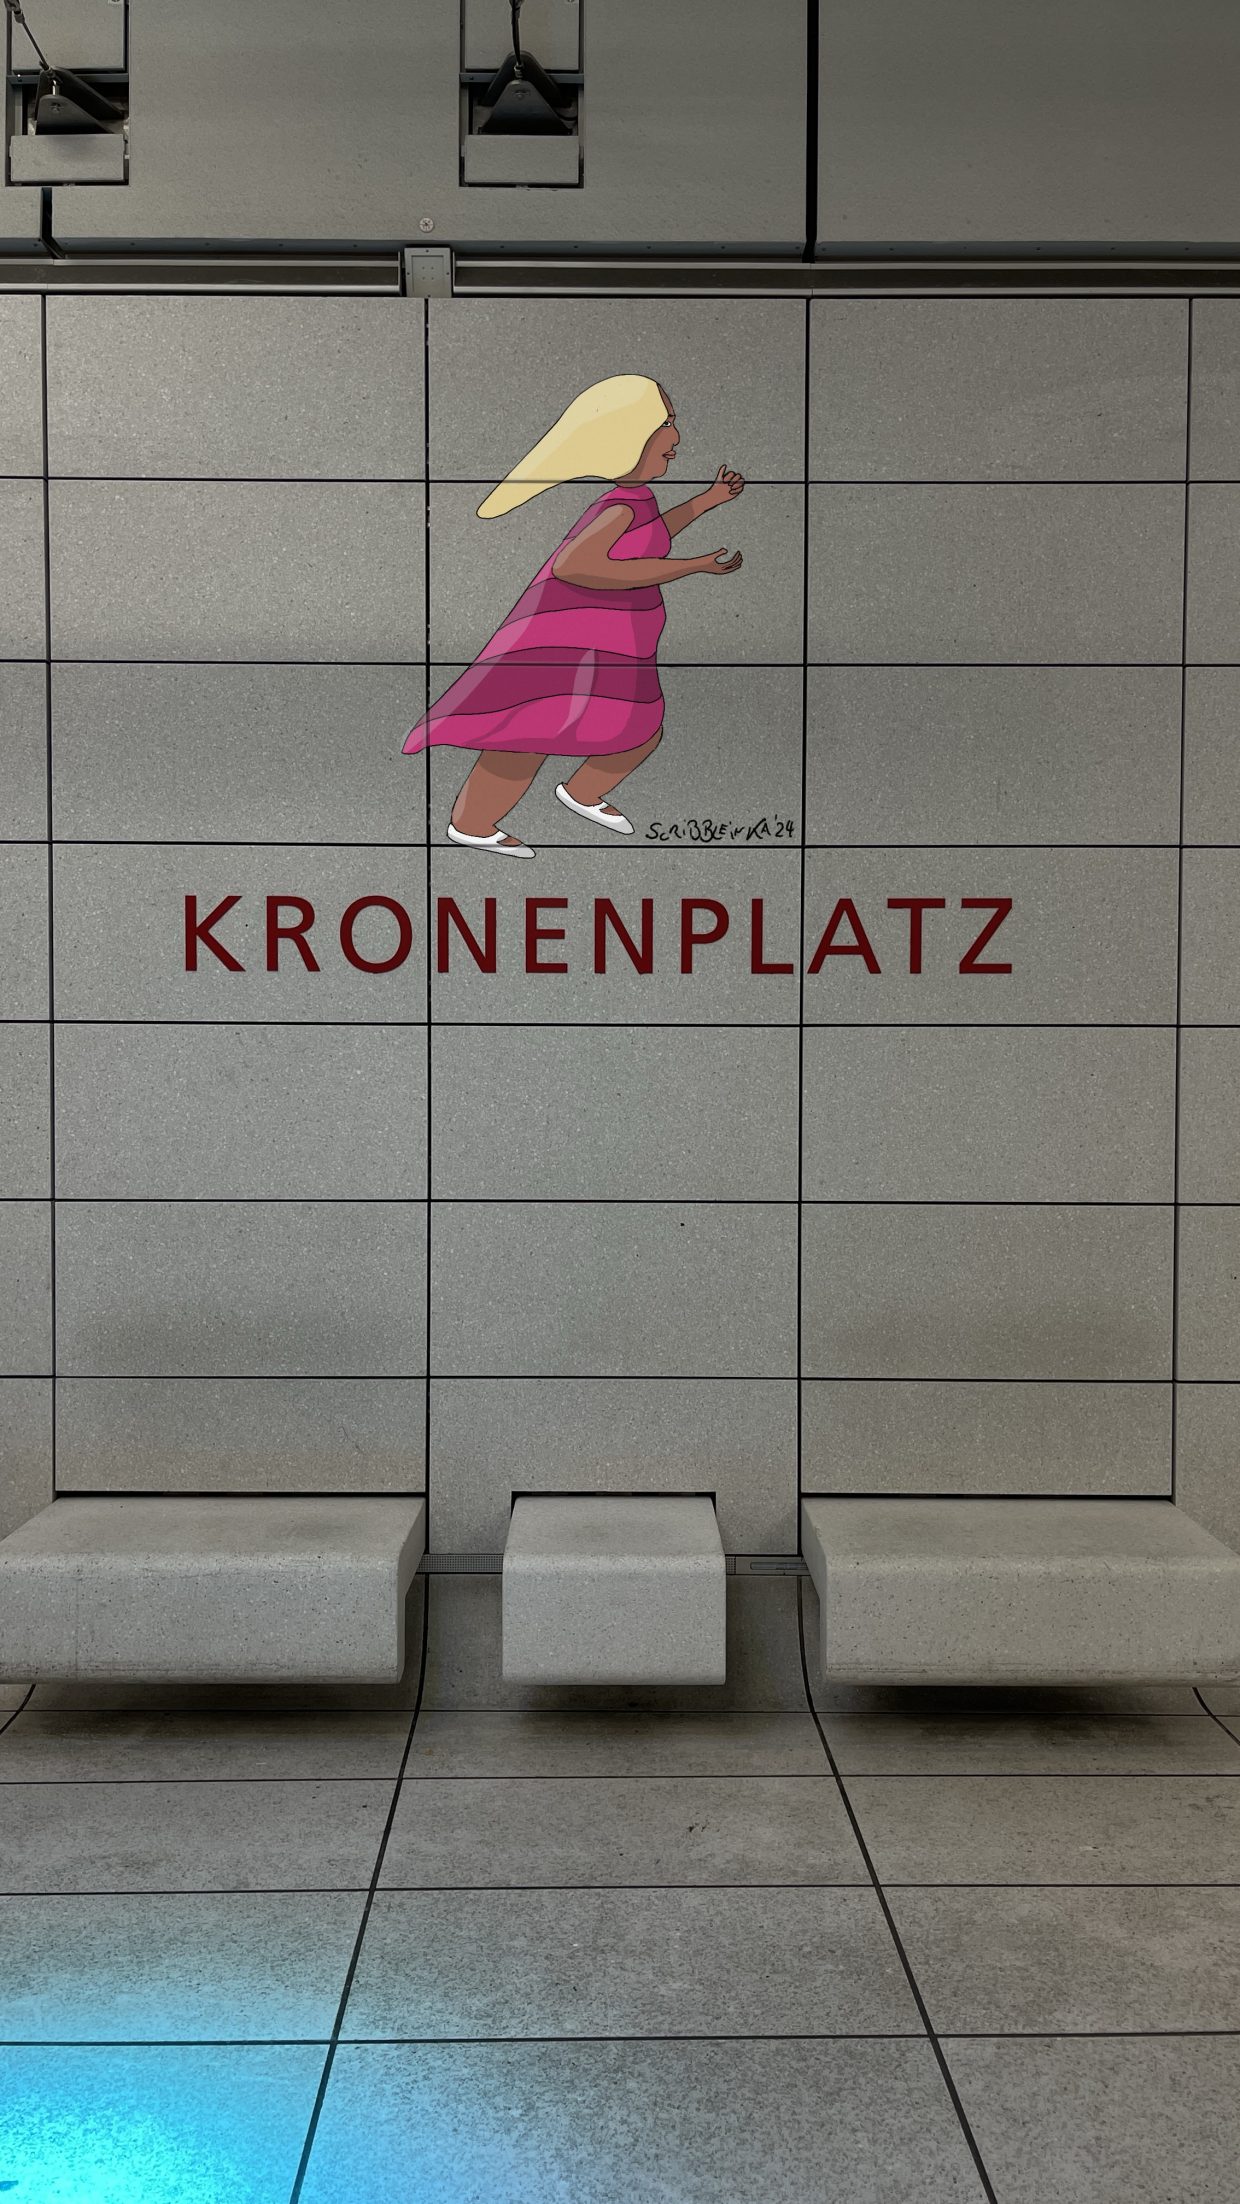 Haltestelle Kronenplatz in Karlsruhe. Man sieht über der Aufschrift Kronenplatz an der Wand das Gemälde einer eilenden Frau in einem pinkfarbenen, gestreiften Kleid.